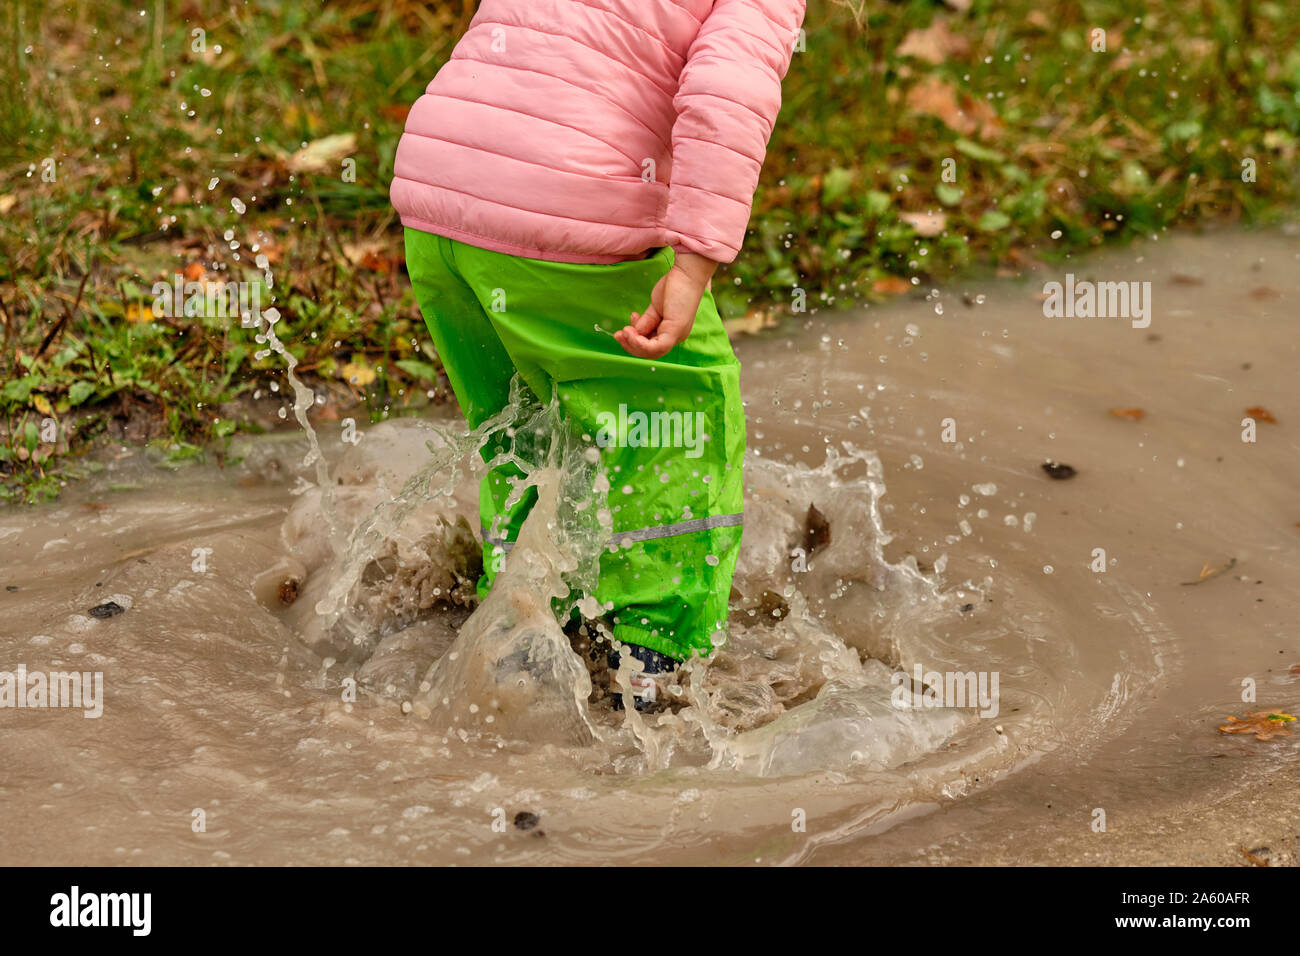 Niedrige Abschnitt eines Kindes Mädchen in Grün wasserdichte Hosen und Gummistiefeln springen in einen massiven regen Pfütze mit Wasser spritzt hoch in der Luft Stockfoto